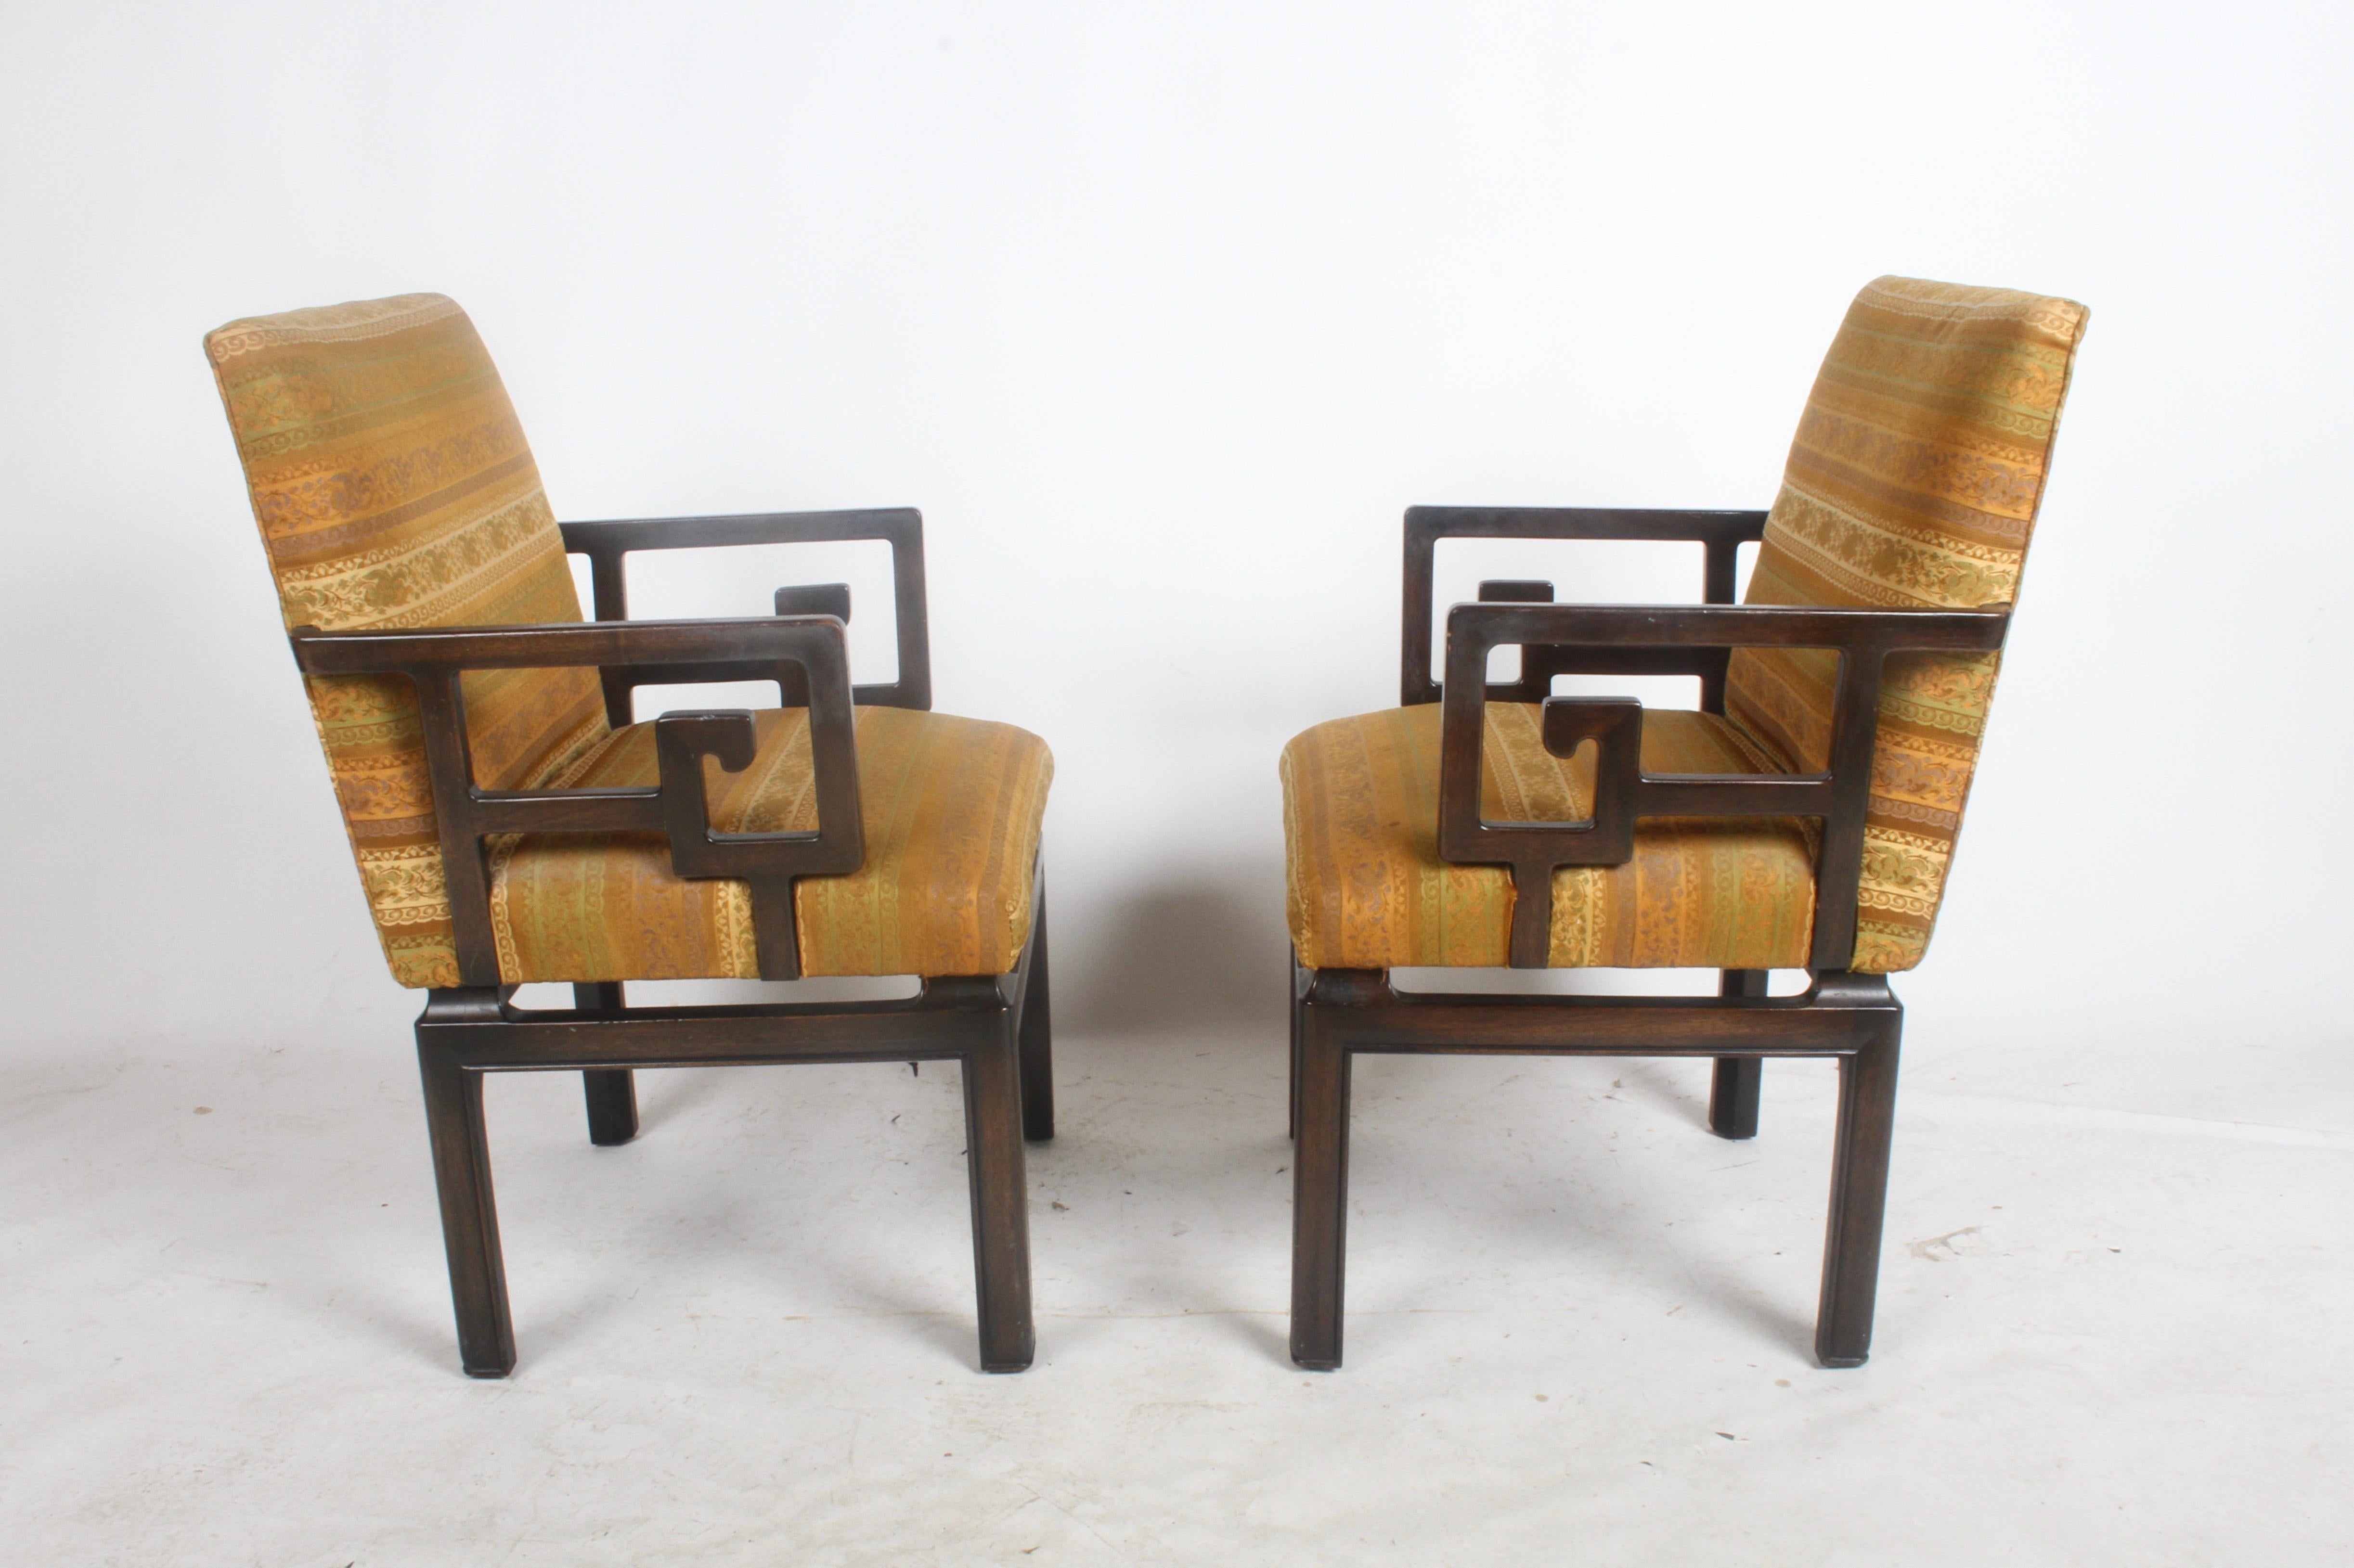 Ich besitze zwei Paar Greek Key Stühle, entworfen von Windsor White für die Baker Far East Collection, ca. 1960er Jahre. Nur zwei sind in der originalen dunklen Espresso-Lackierung und Polsterung abgebildet (sollte nachgearbeitet werden), die